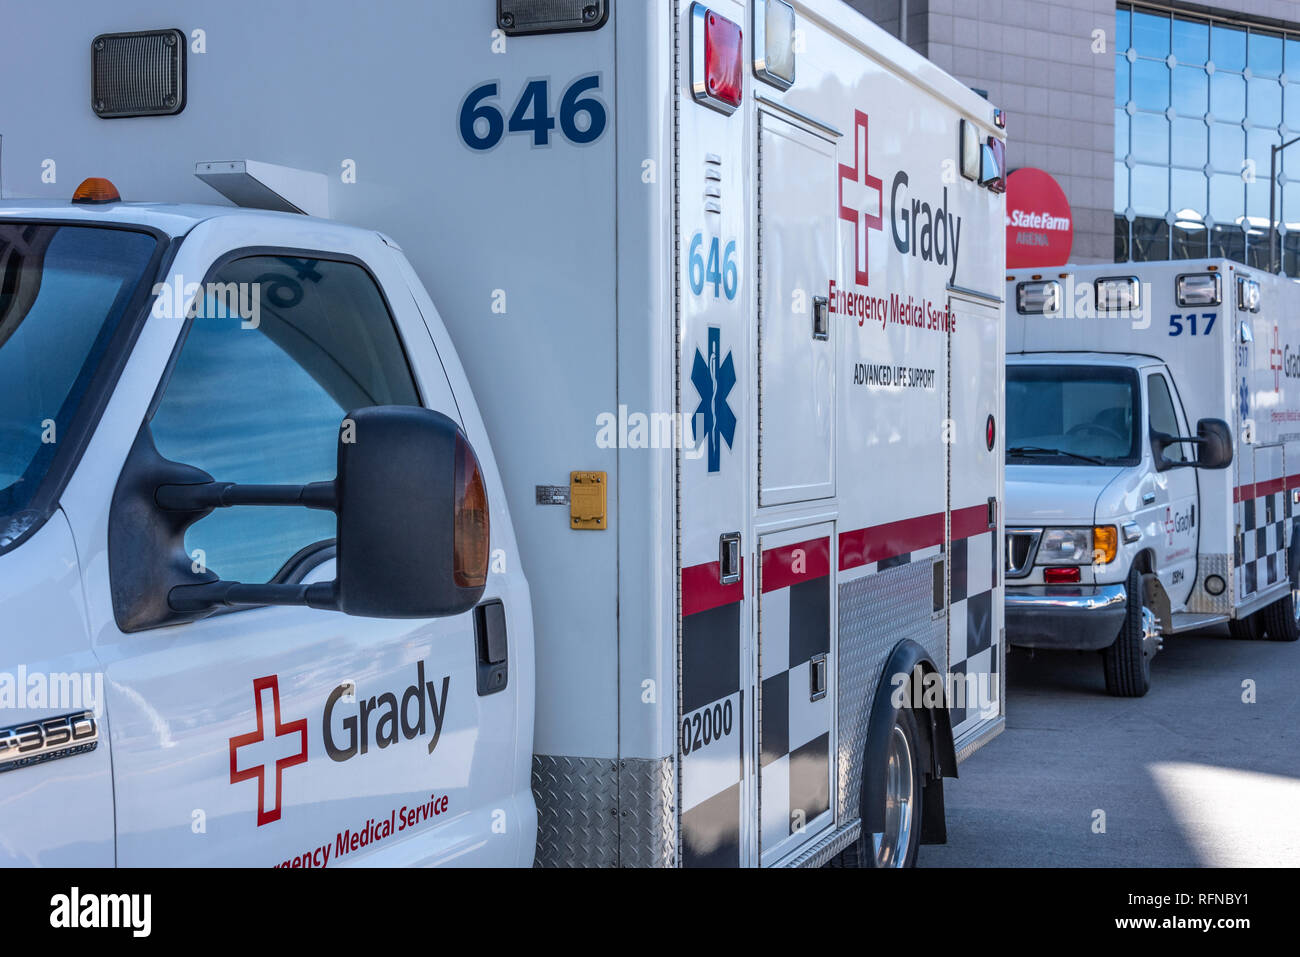 Les ambulances de l'hôpital Grady au centre-ville d'Atlanta, Géorgie. (USA) Banque D'Images